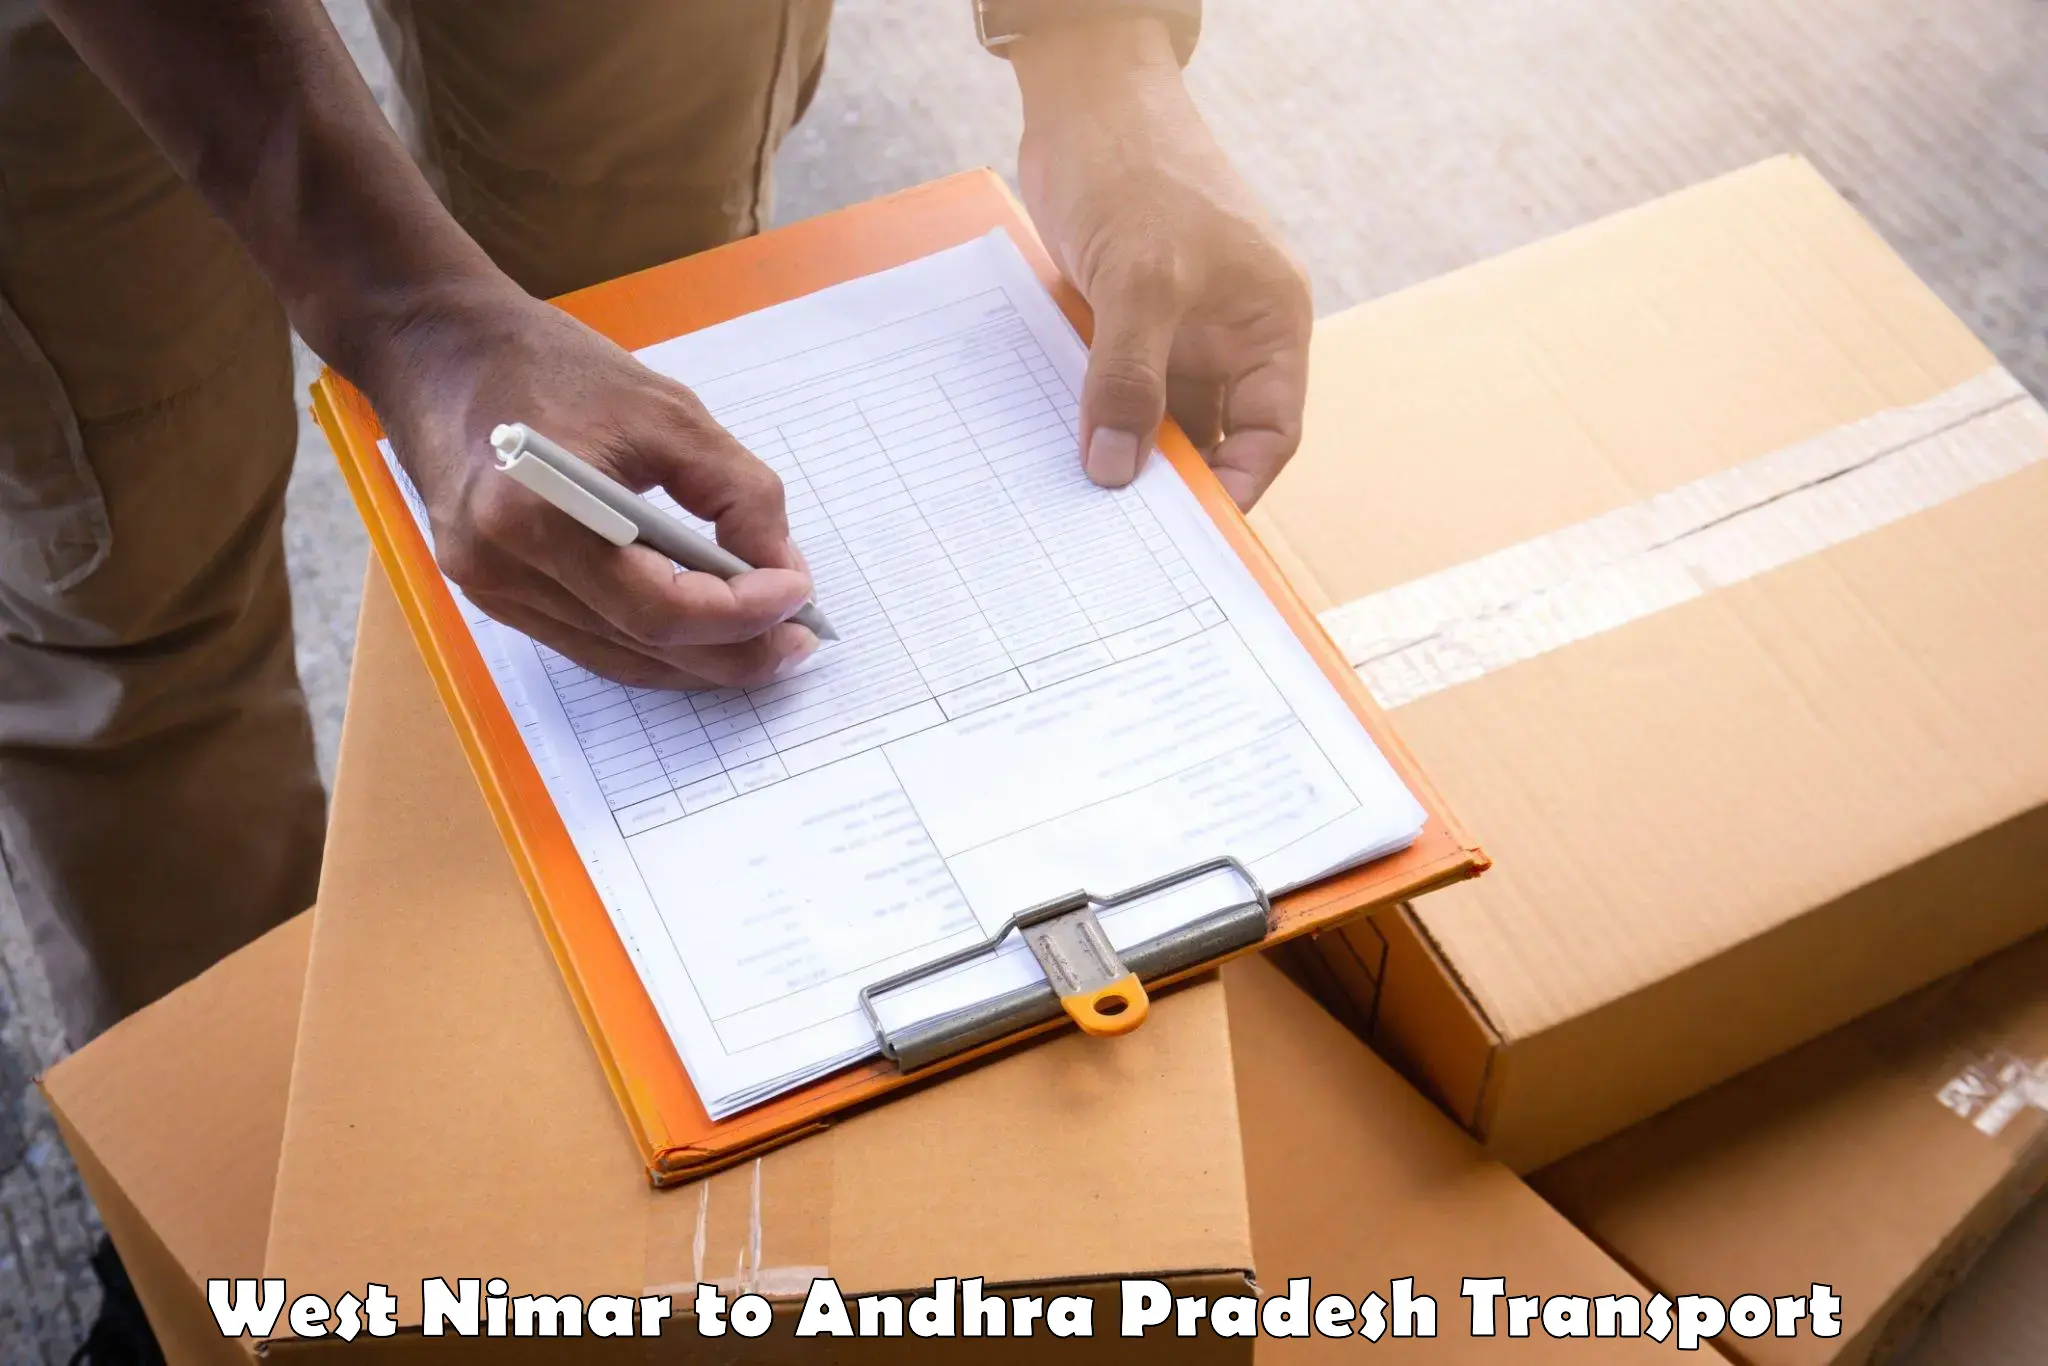 Cargo transport services West Nimar to Bhimavaram